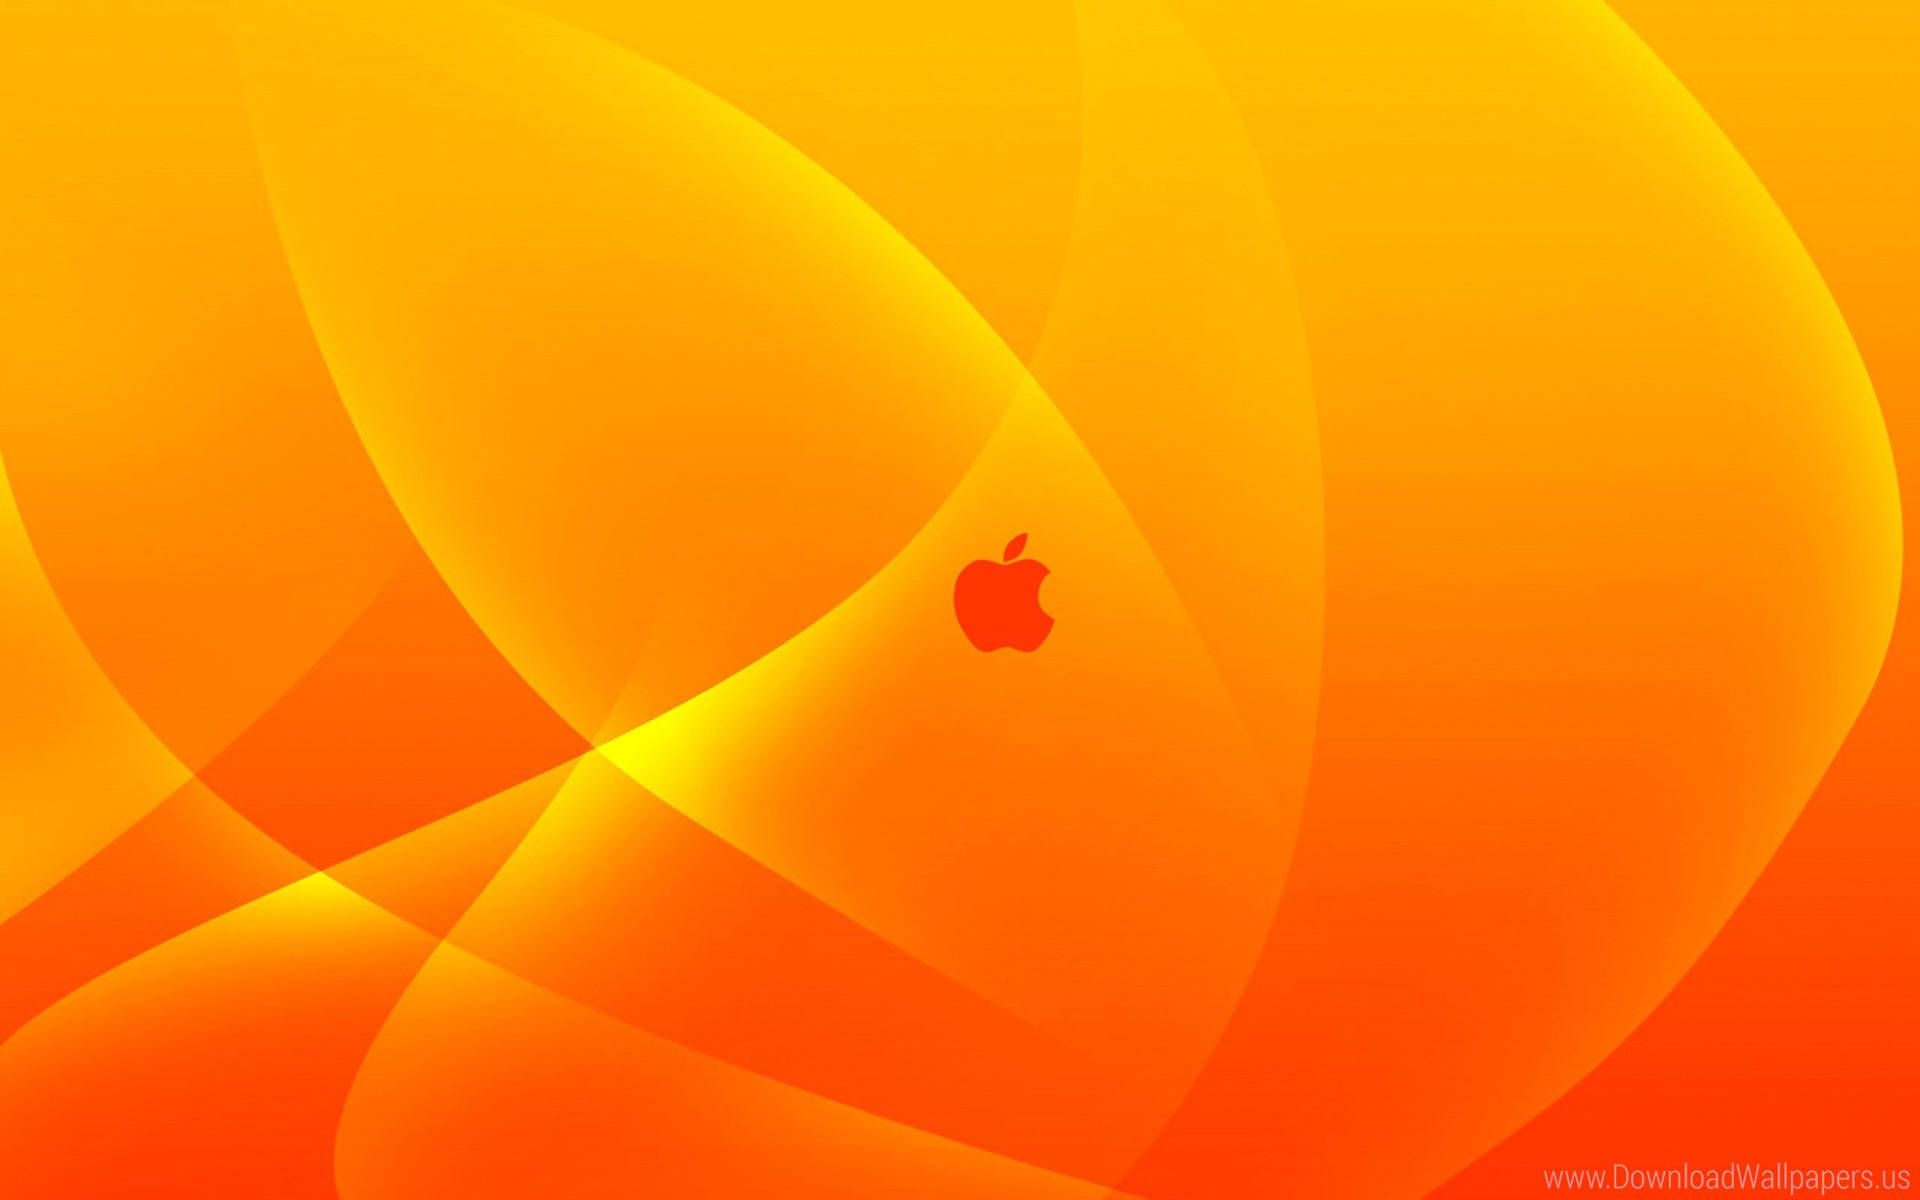 A Vibrant Orange Apple Icon Wallpaper